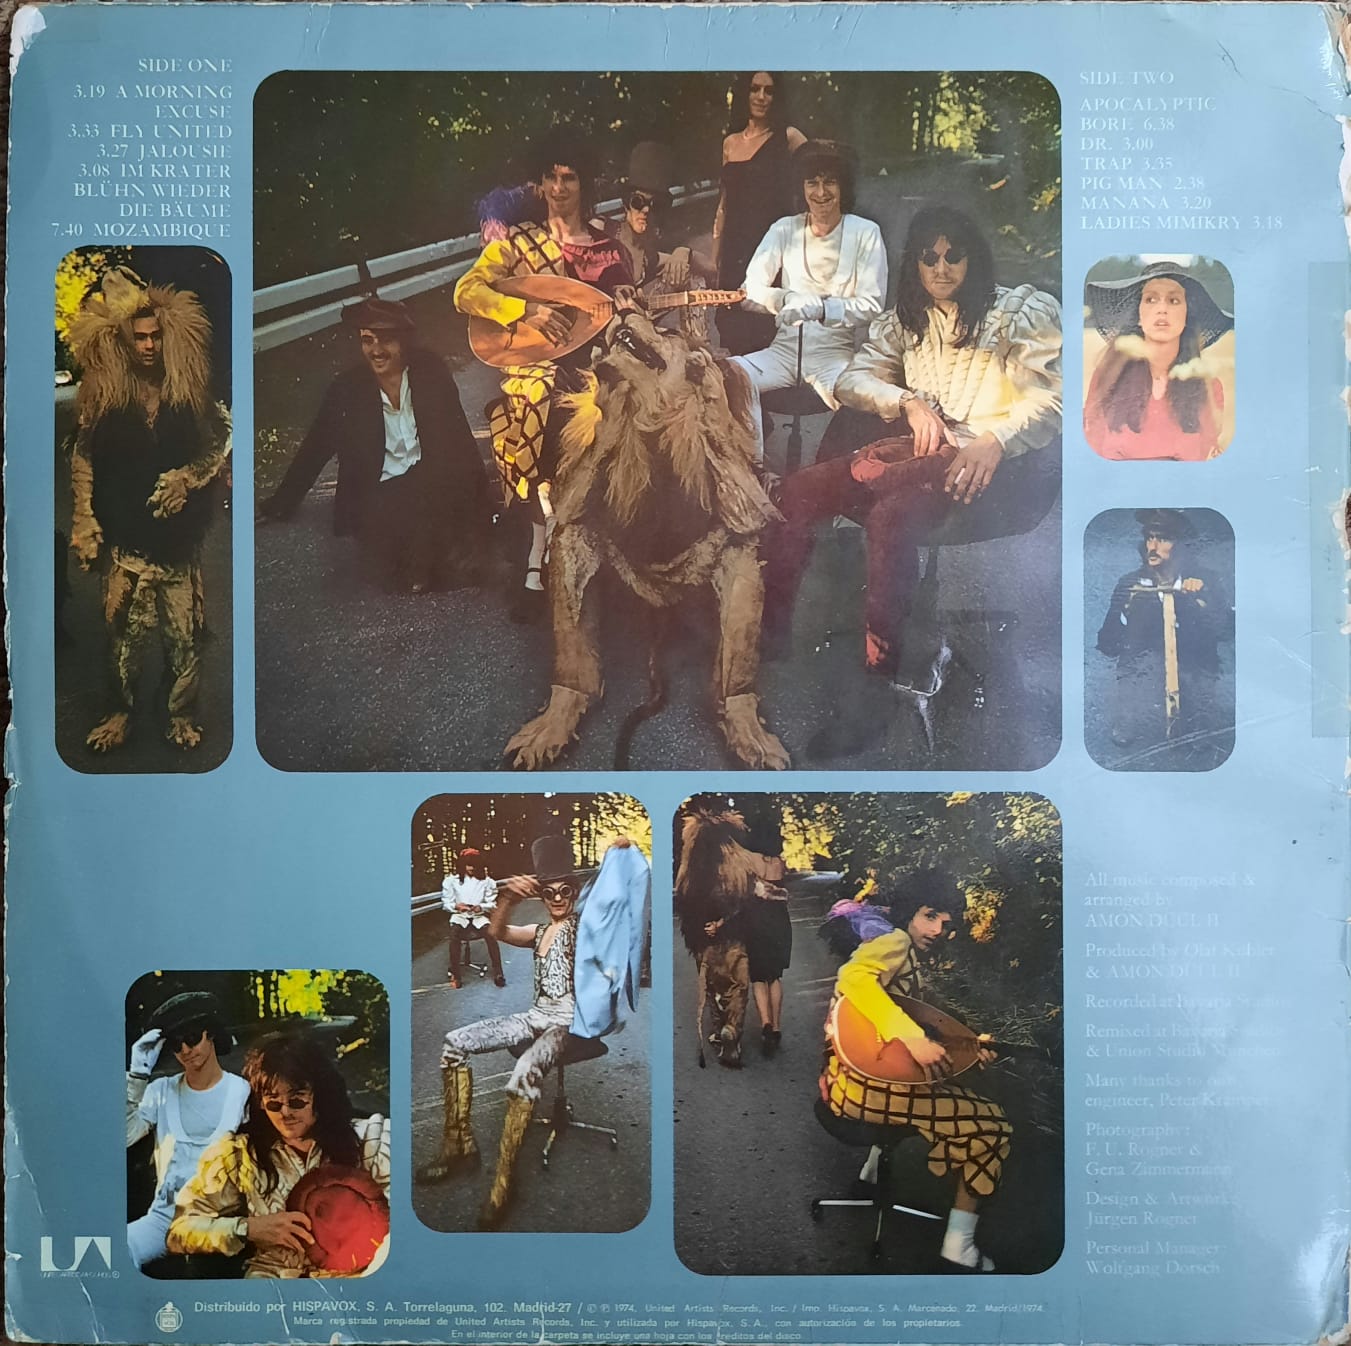 Amon Duul II - Vive La Trance (LP, España, 1974)